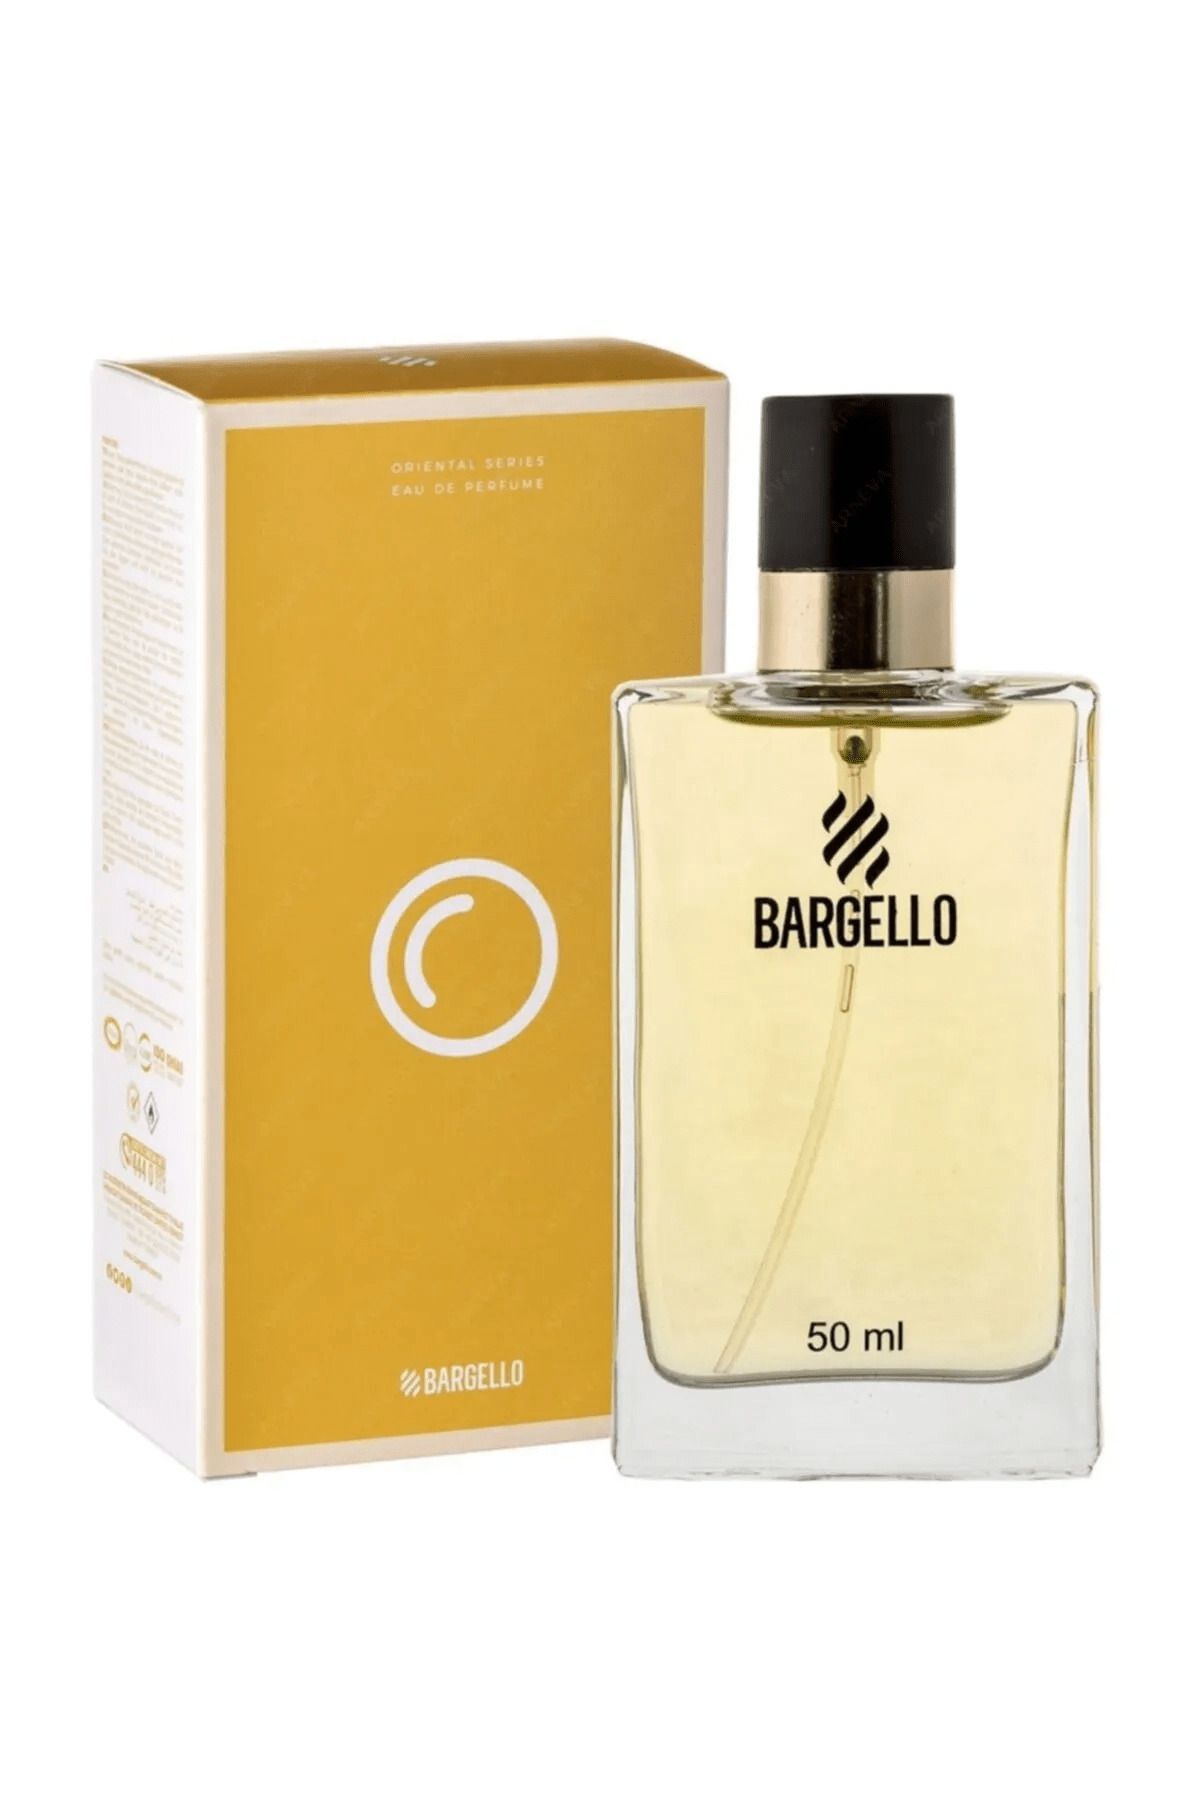 Bargello Oriental Erkek Parfüm